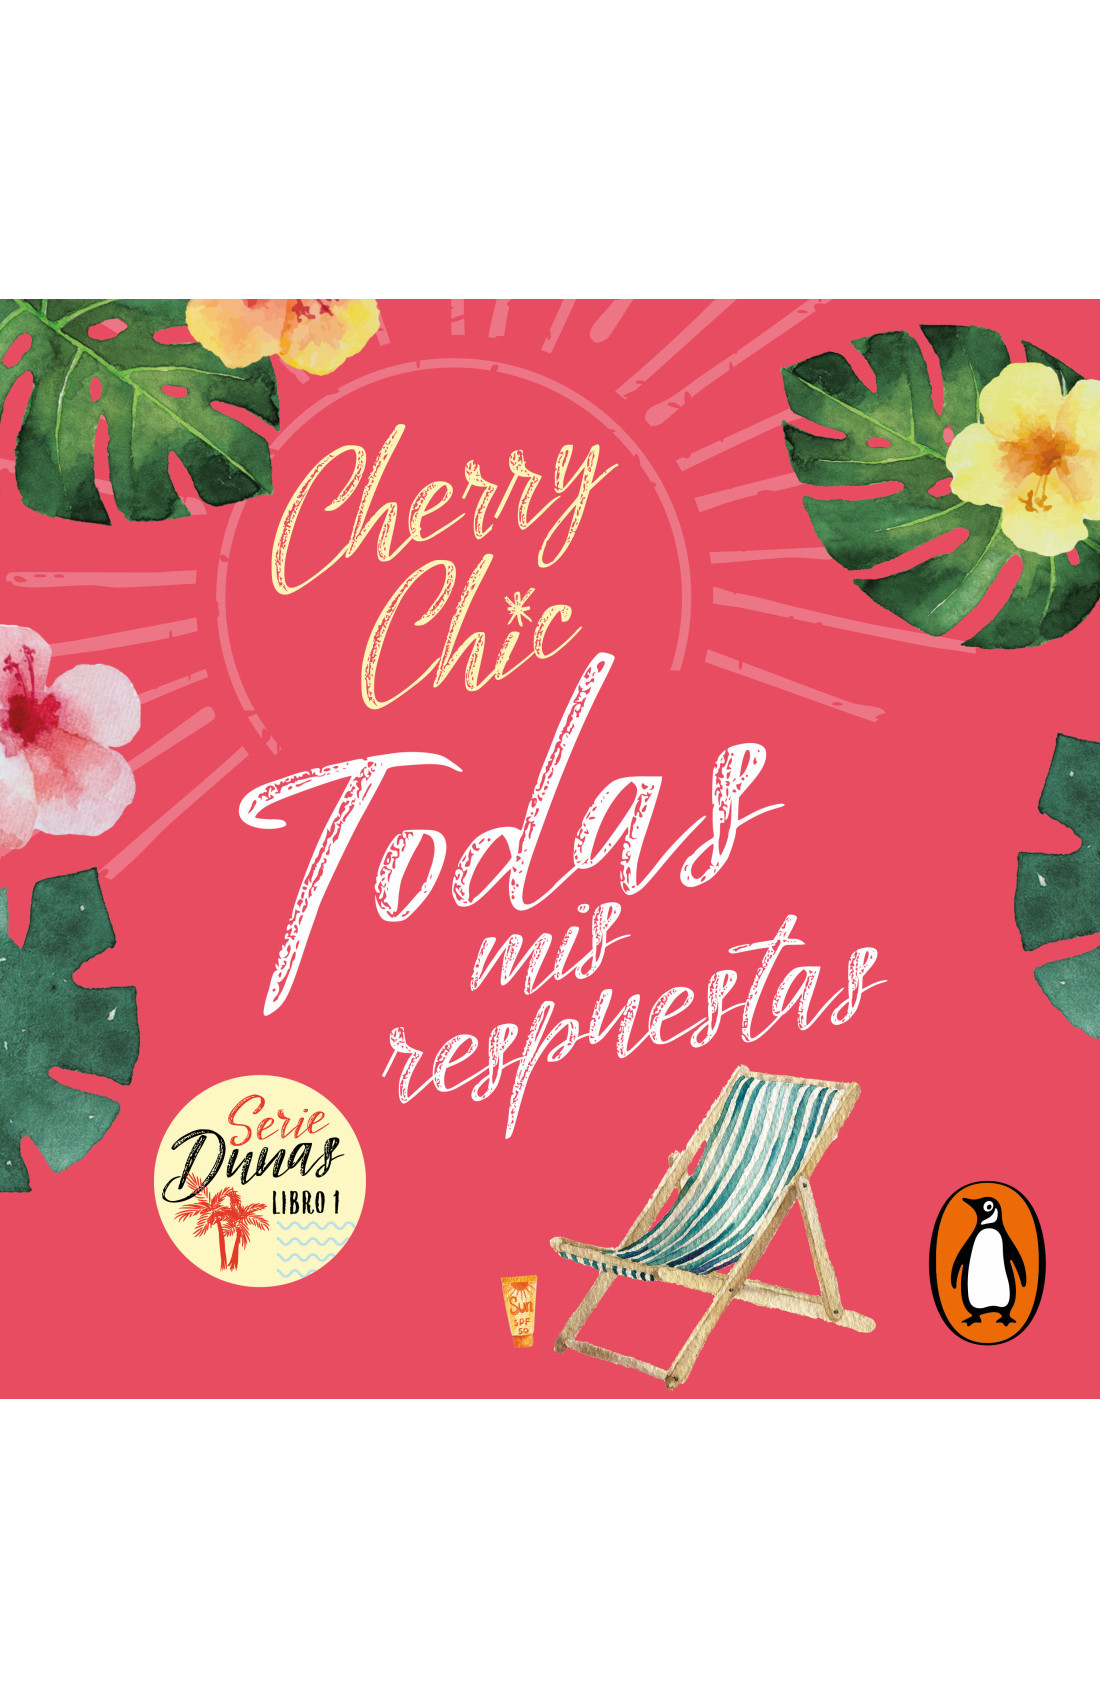 Cherry Chic — Todos los E-books y Audiolibros